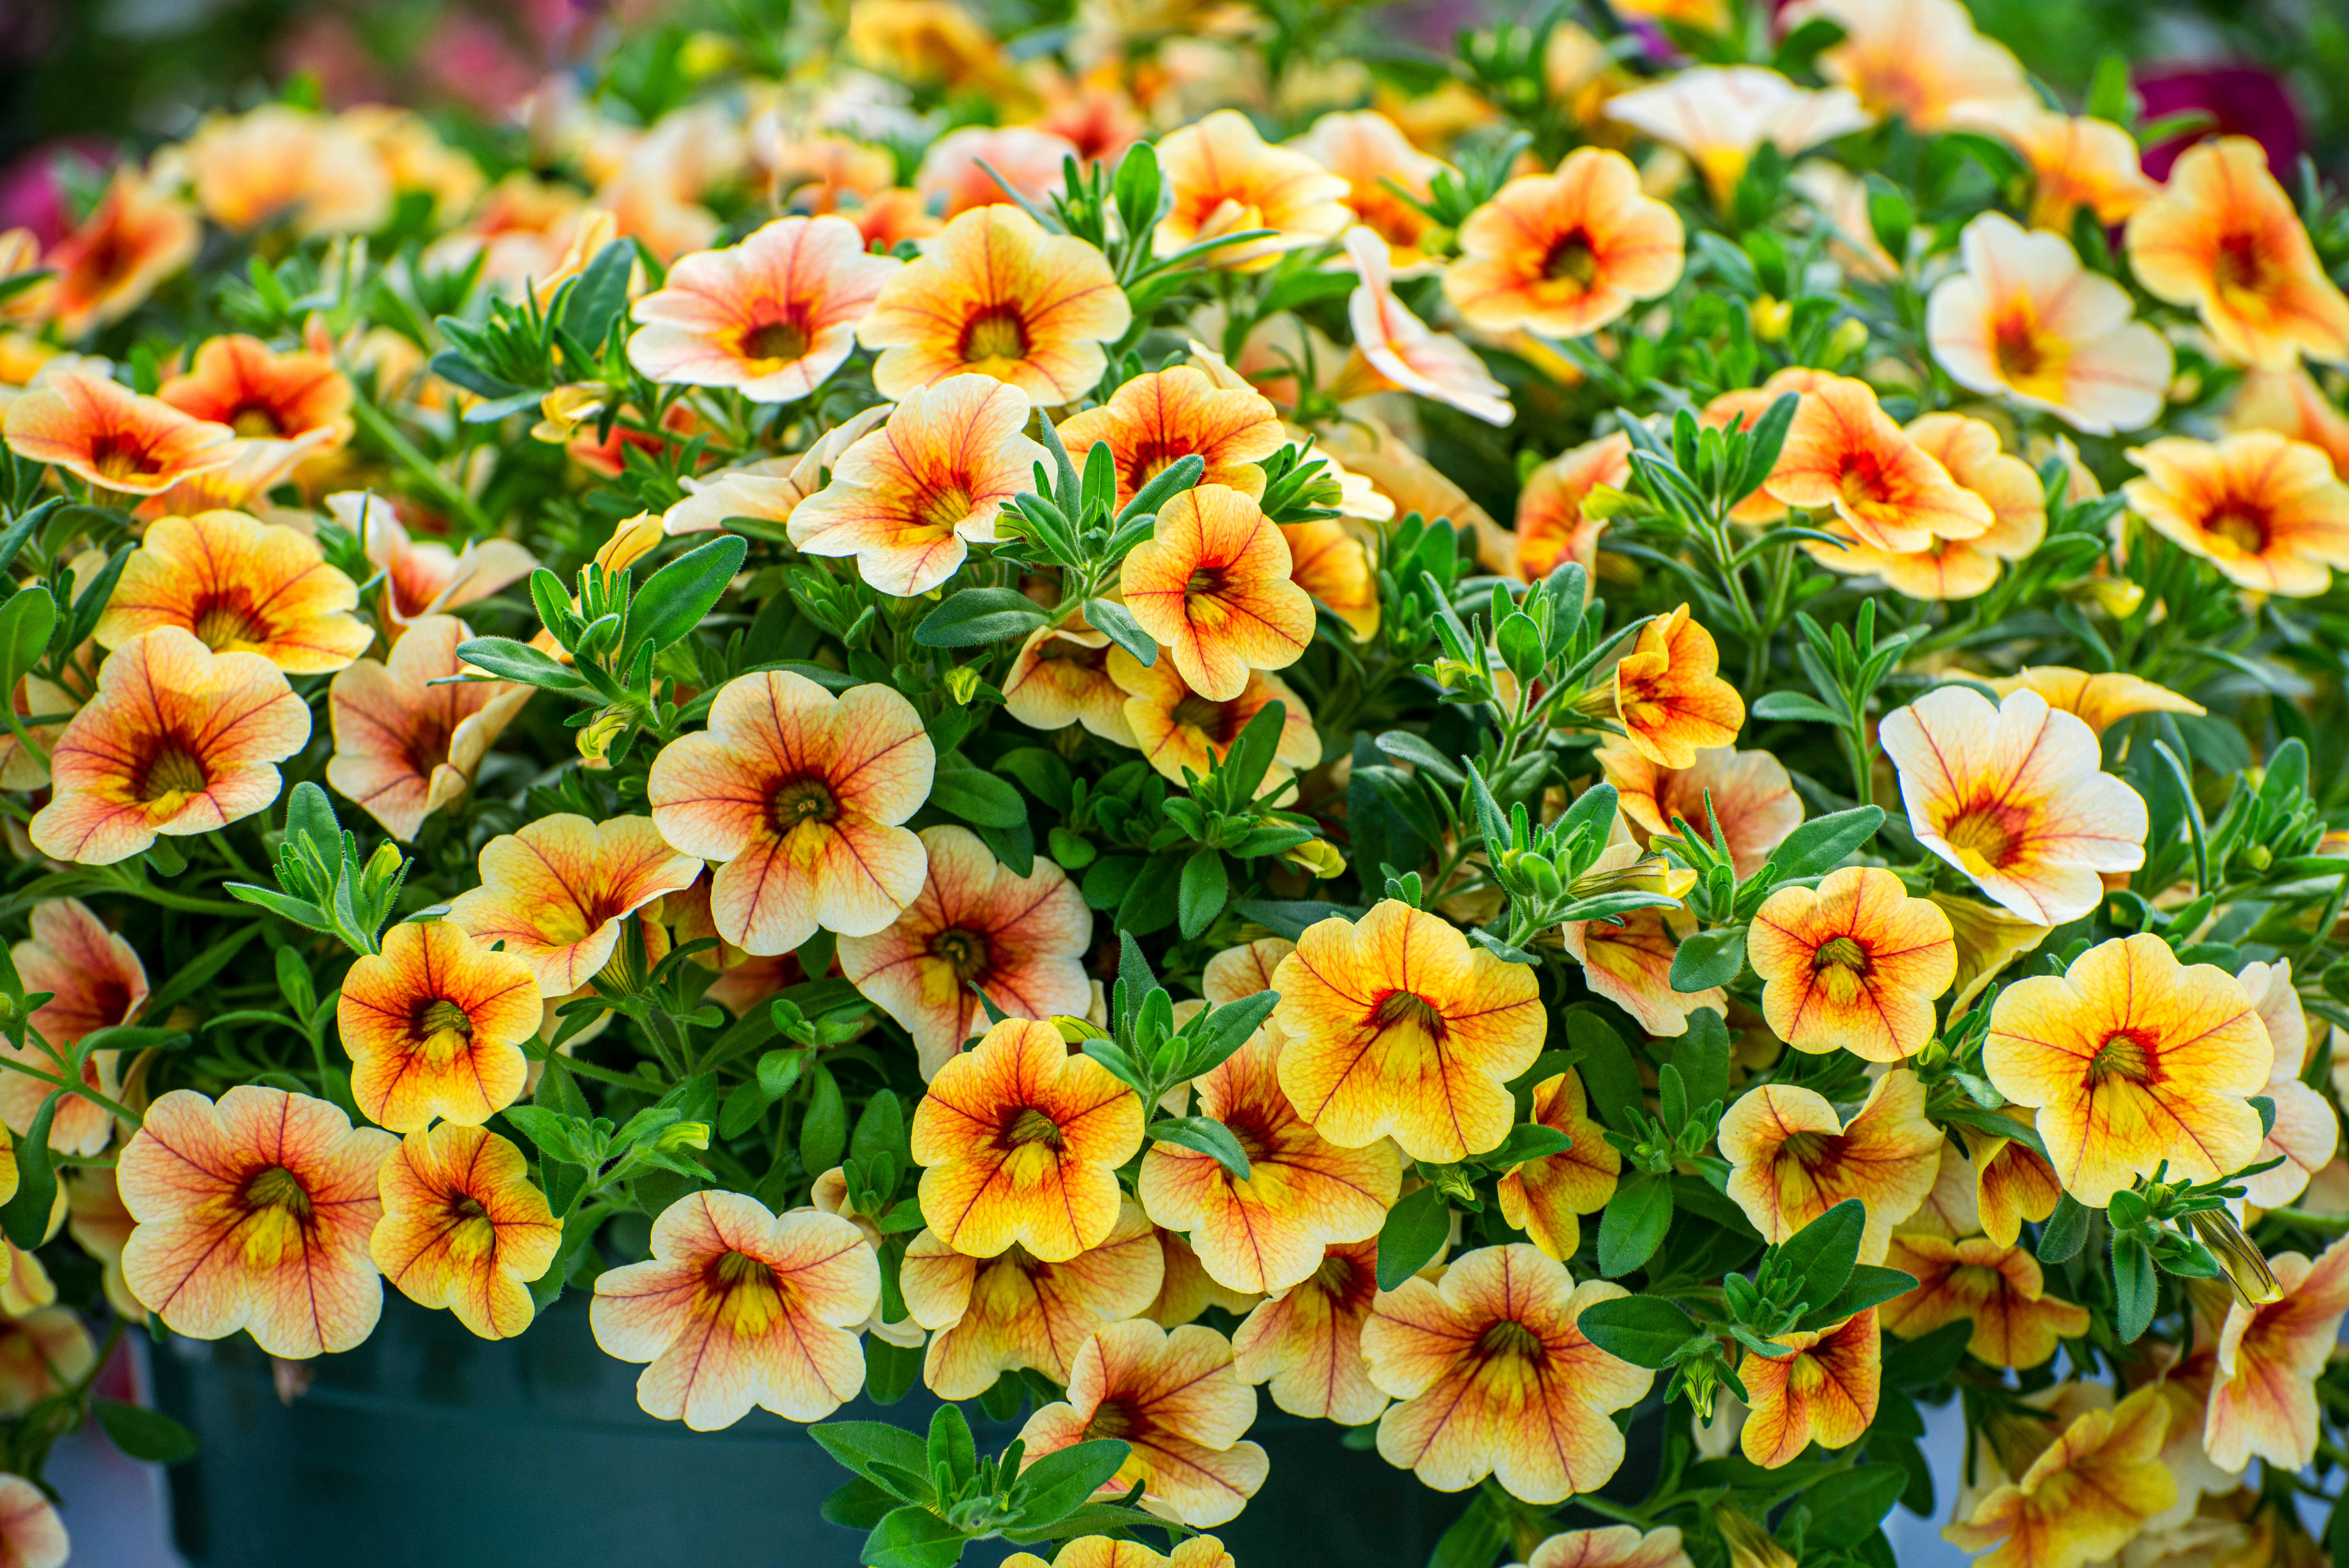 Calibrachoa : des fleurs en clochettes pour de magnifiques suspensions ! Copyright (c) 2021 Christynat/Shutterstock.